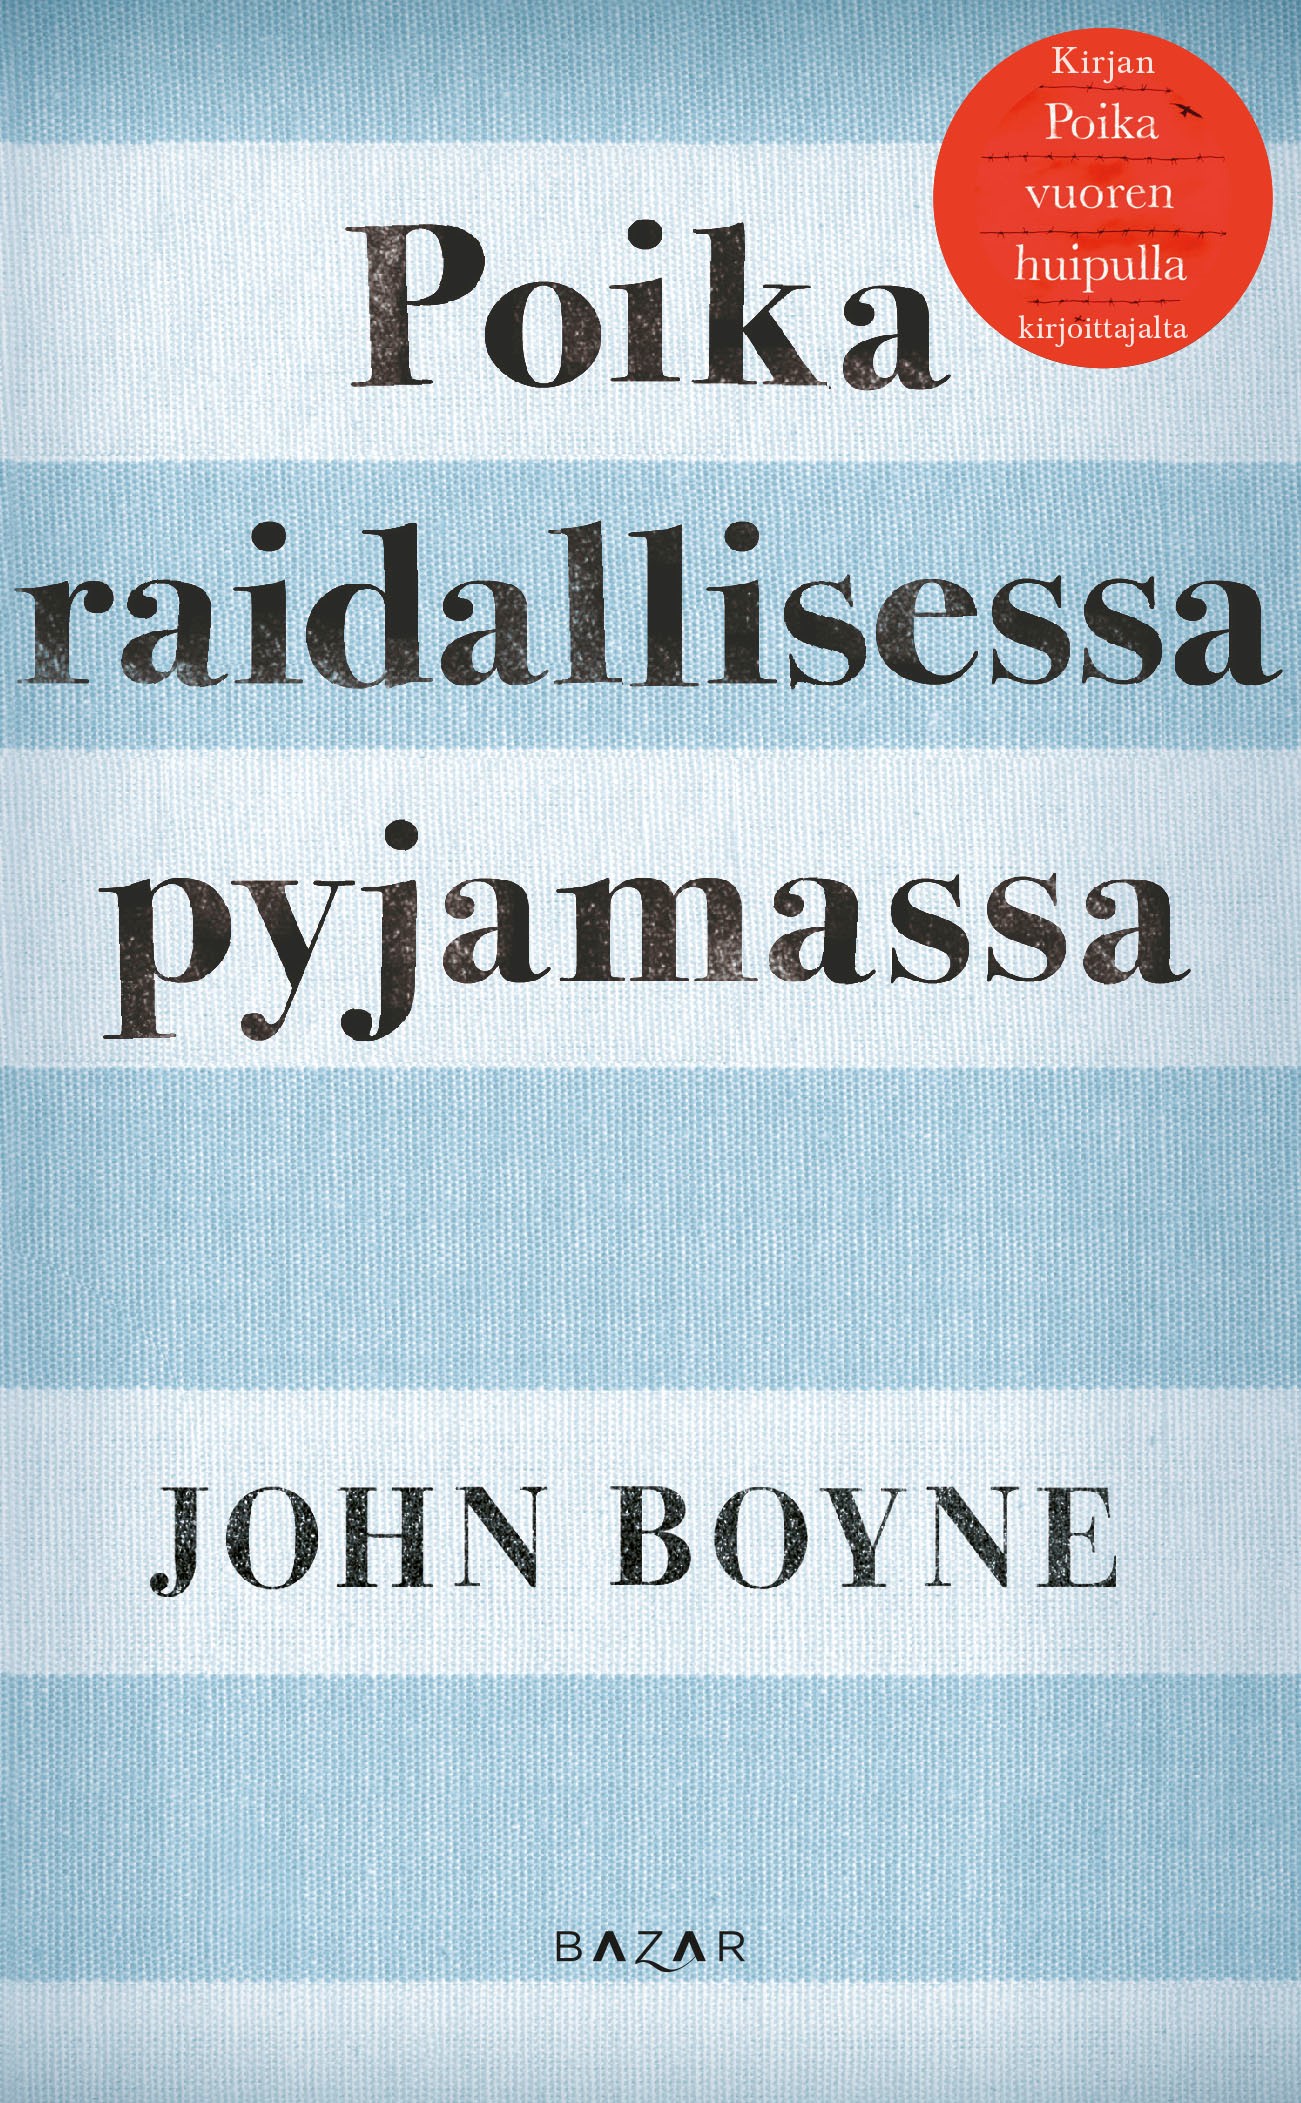 Boyne, John - Poika raidallisessa pyjamassa, ebook